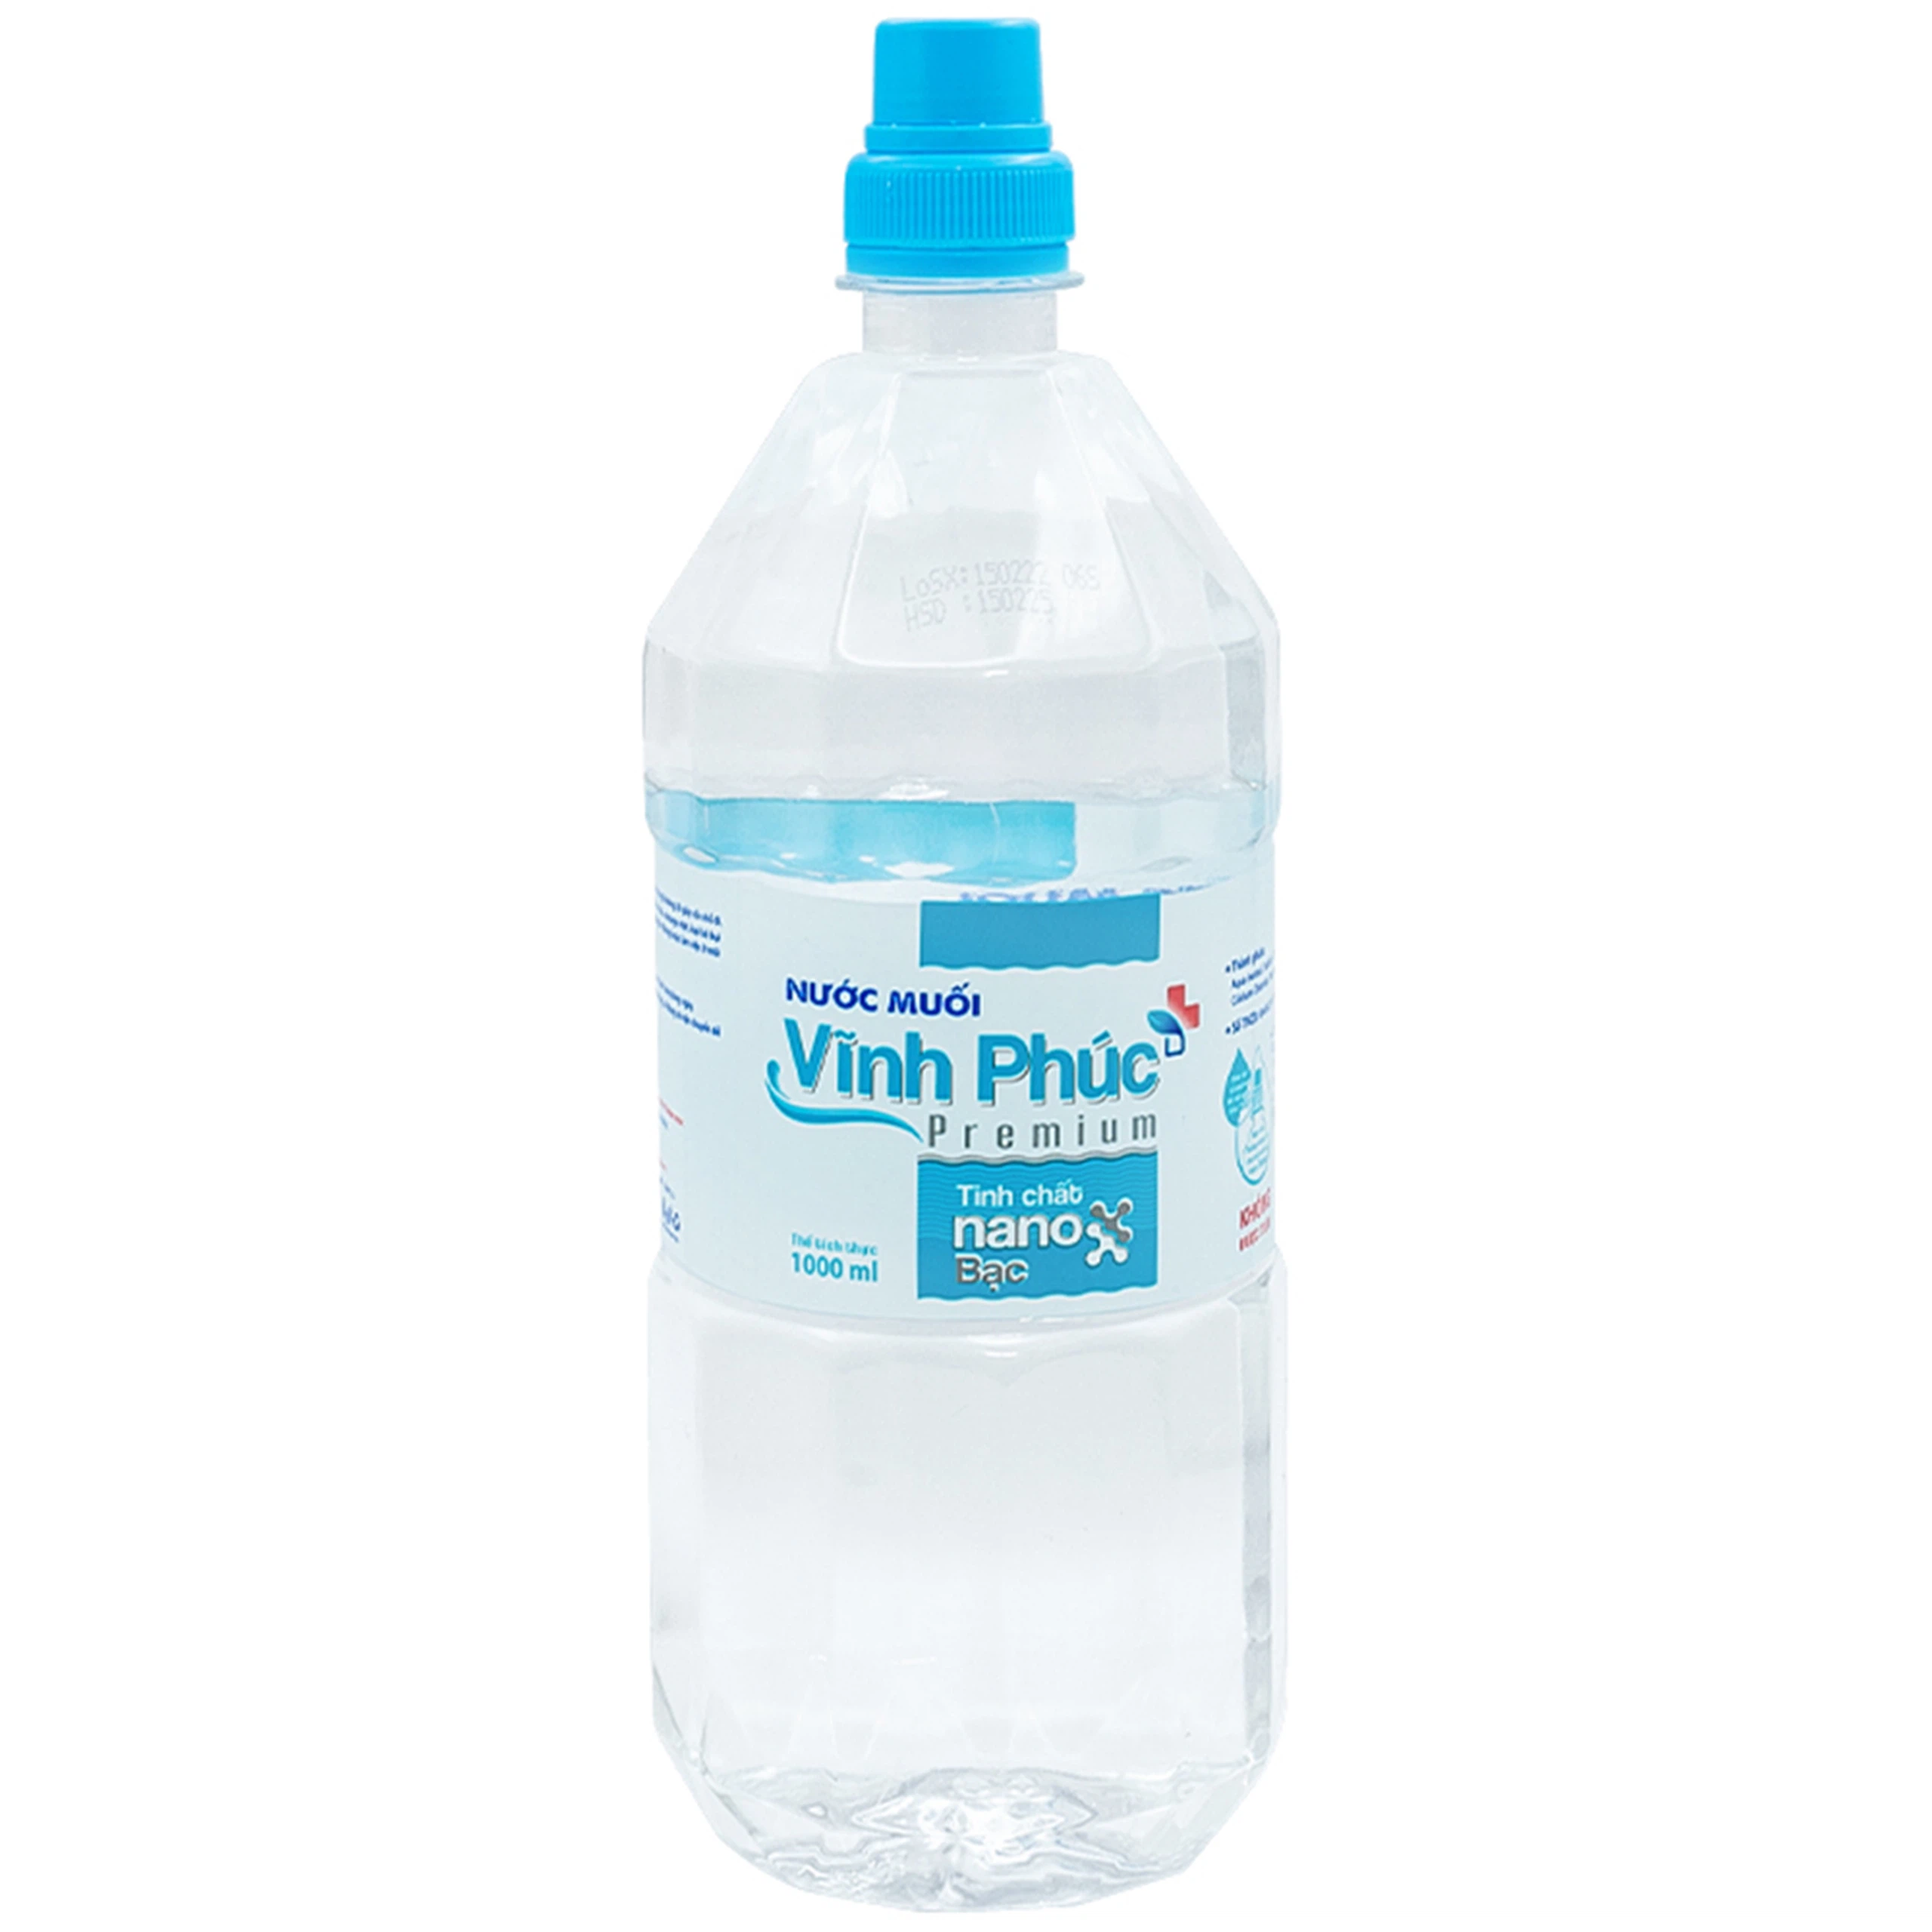 Nước muối Vĩnh Phúc Premium Nano Bạc hỗ trợ loại bỏ vi khuẩn trong khoang miệng, khử mùi hôi miệng (1000ml)